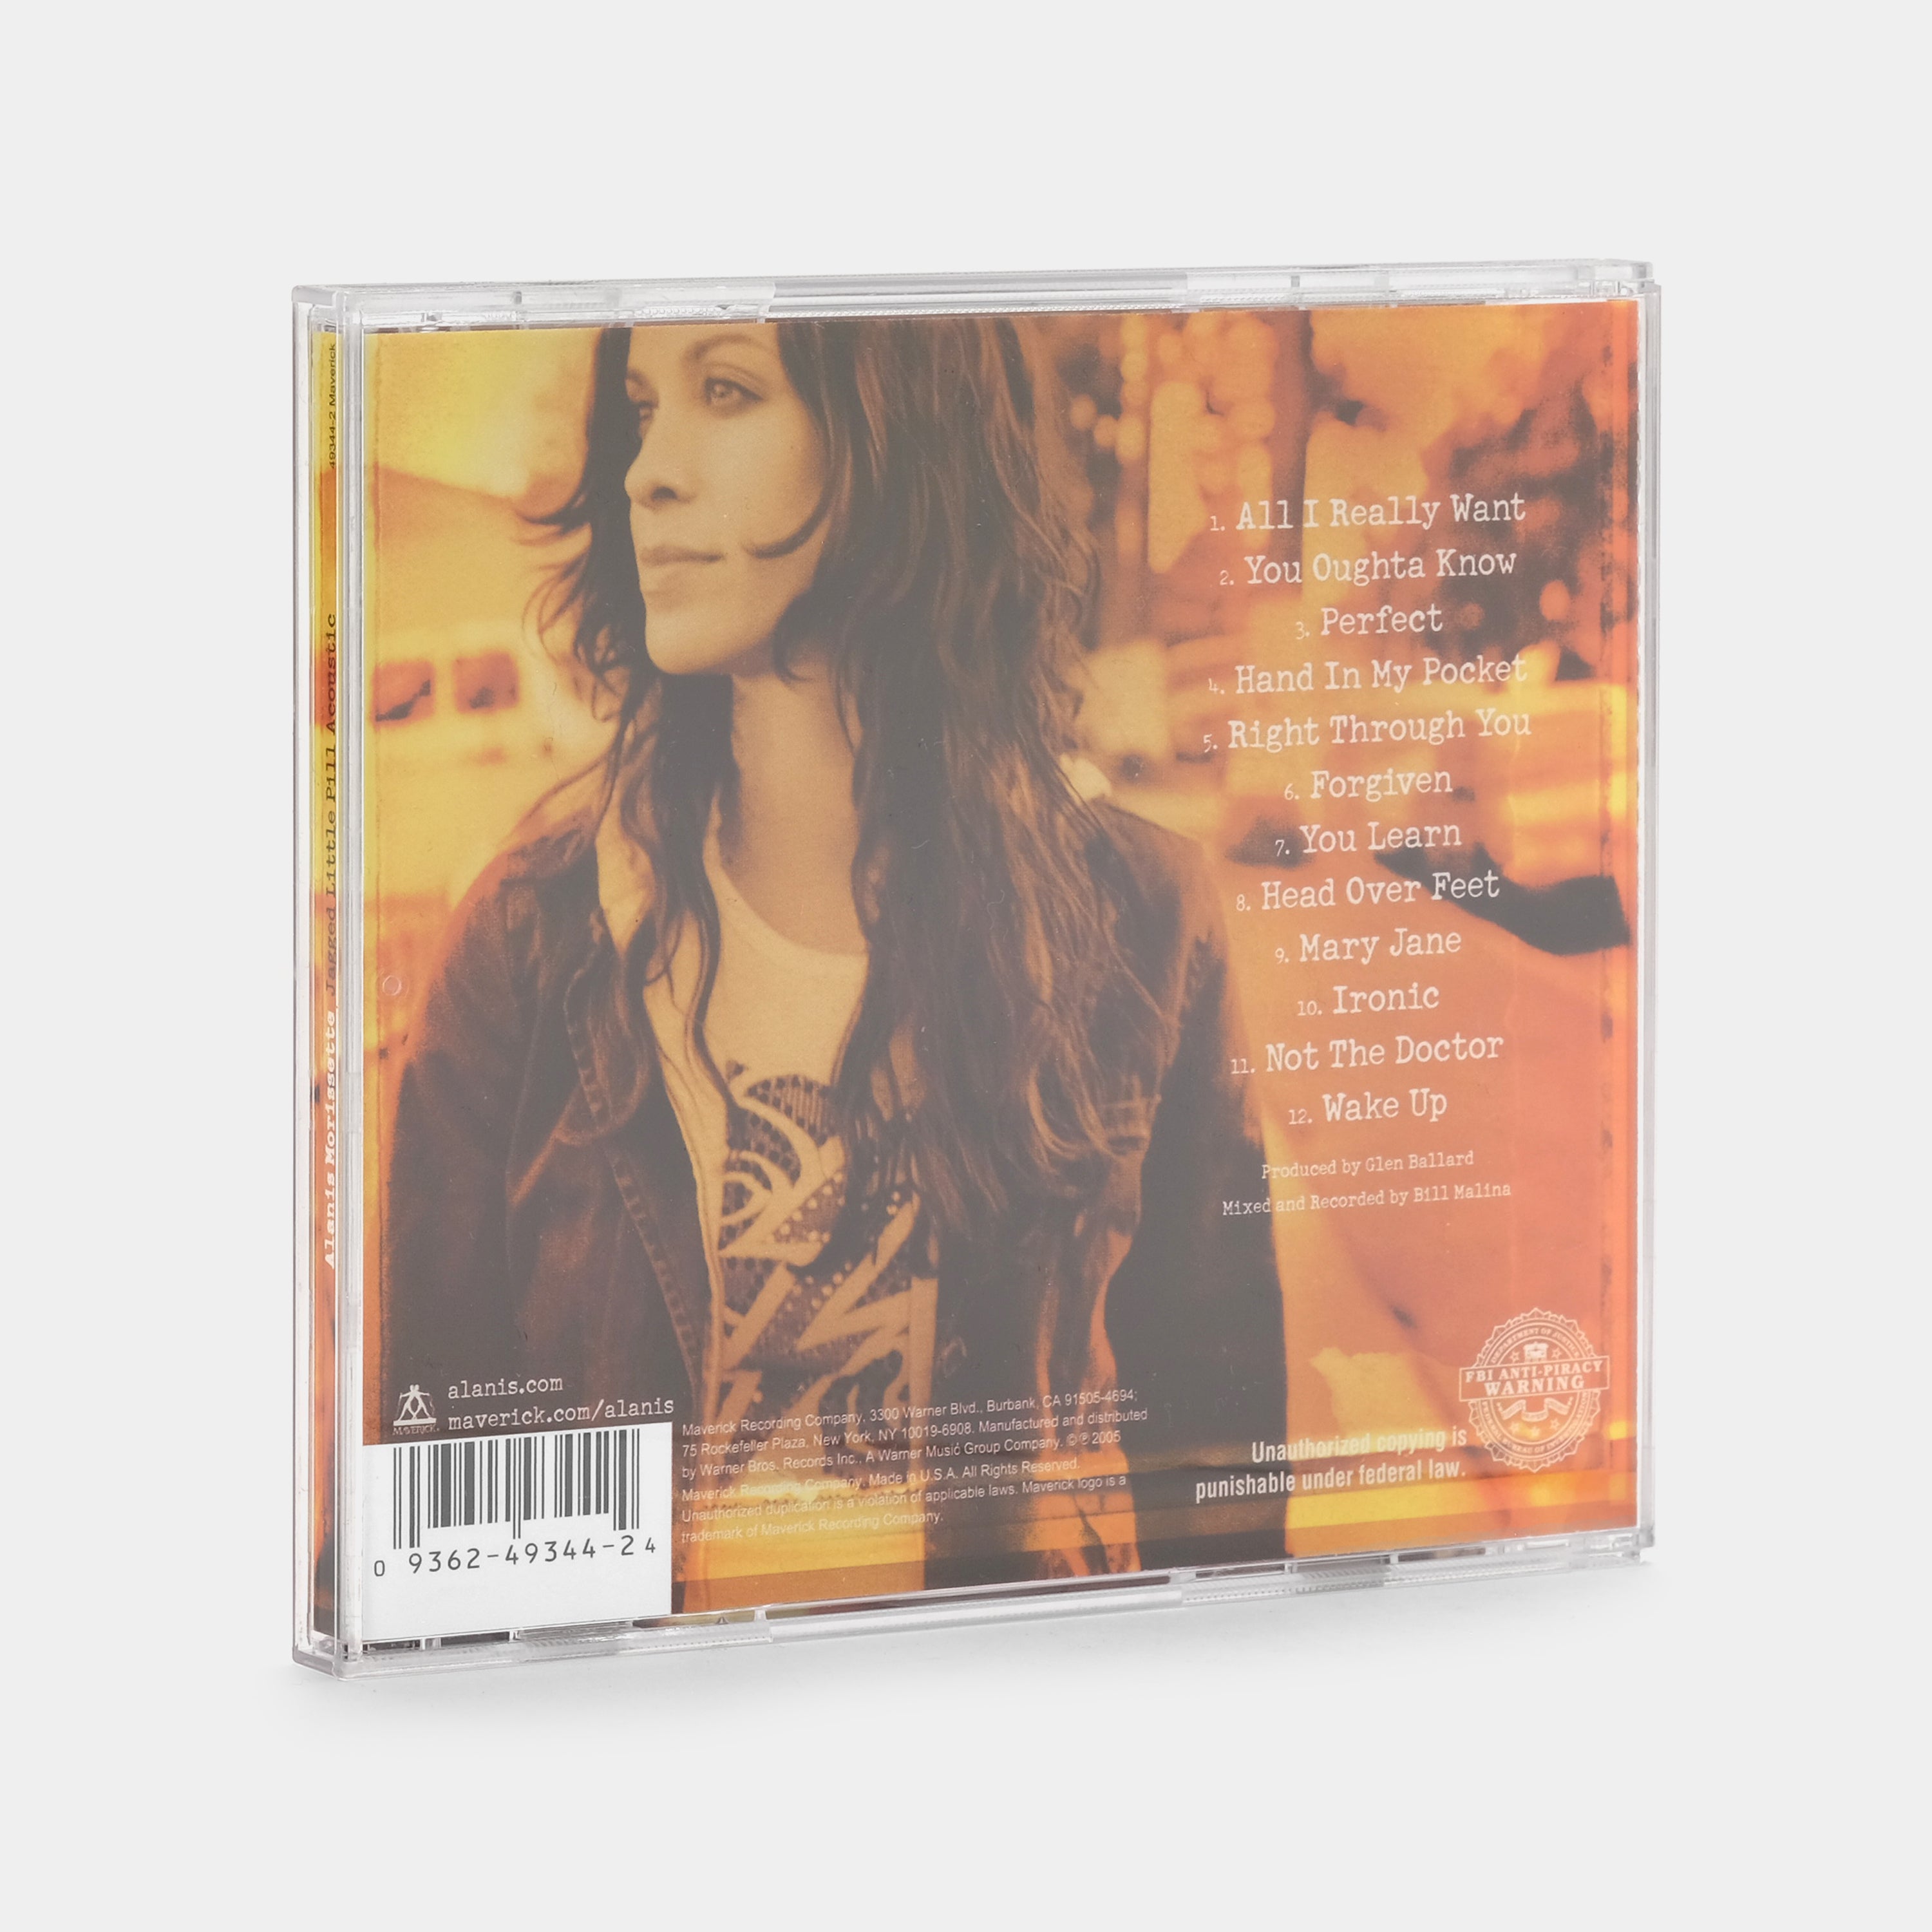 Alanis Morissette - Jagged Little Pill Acoustic CD